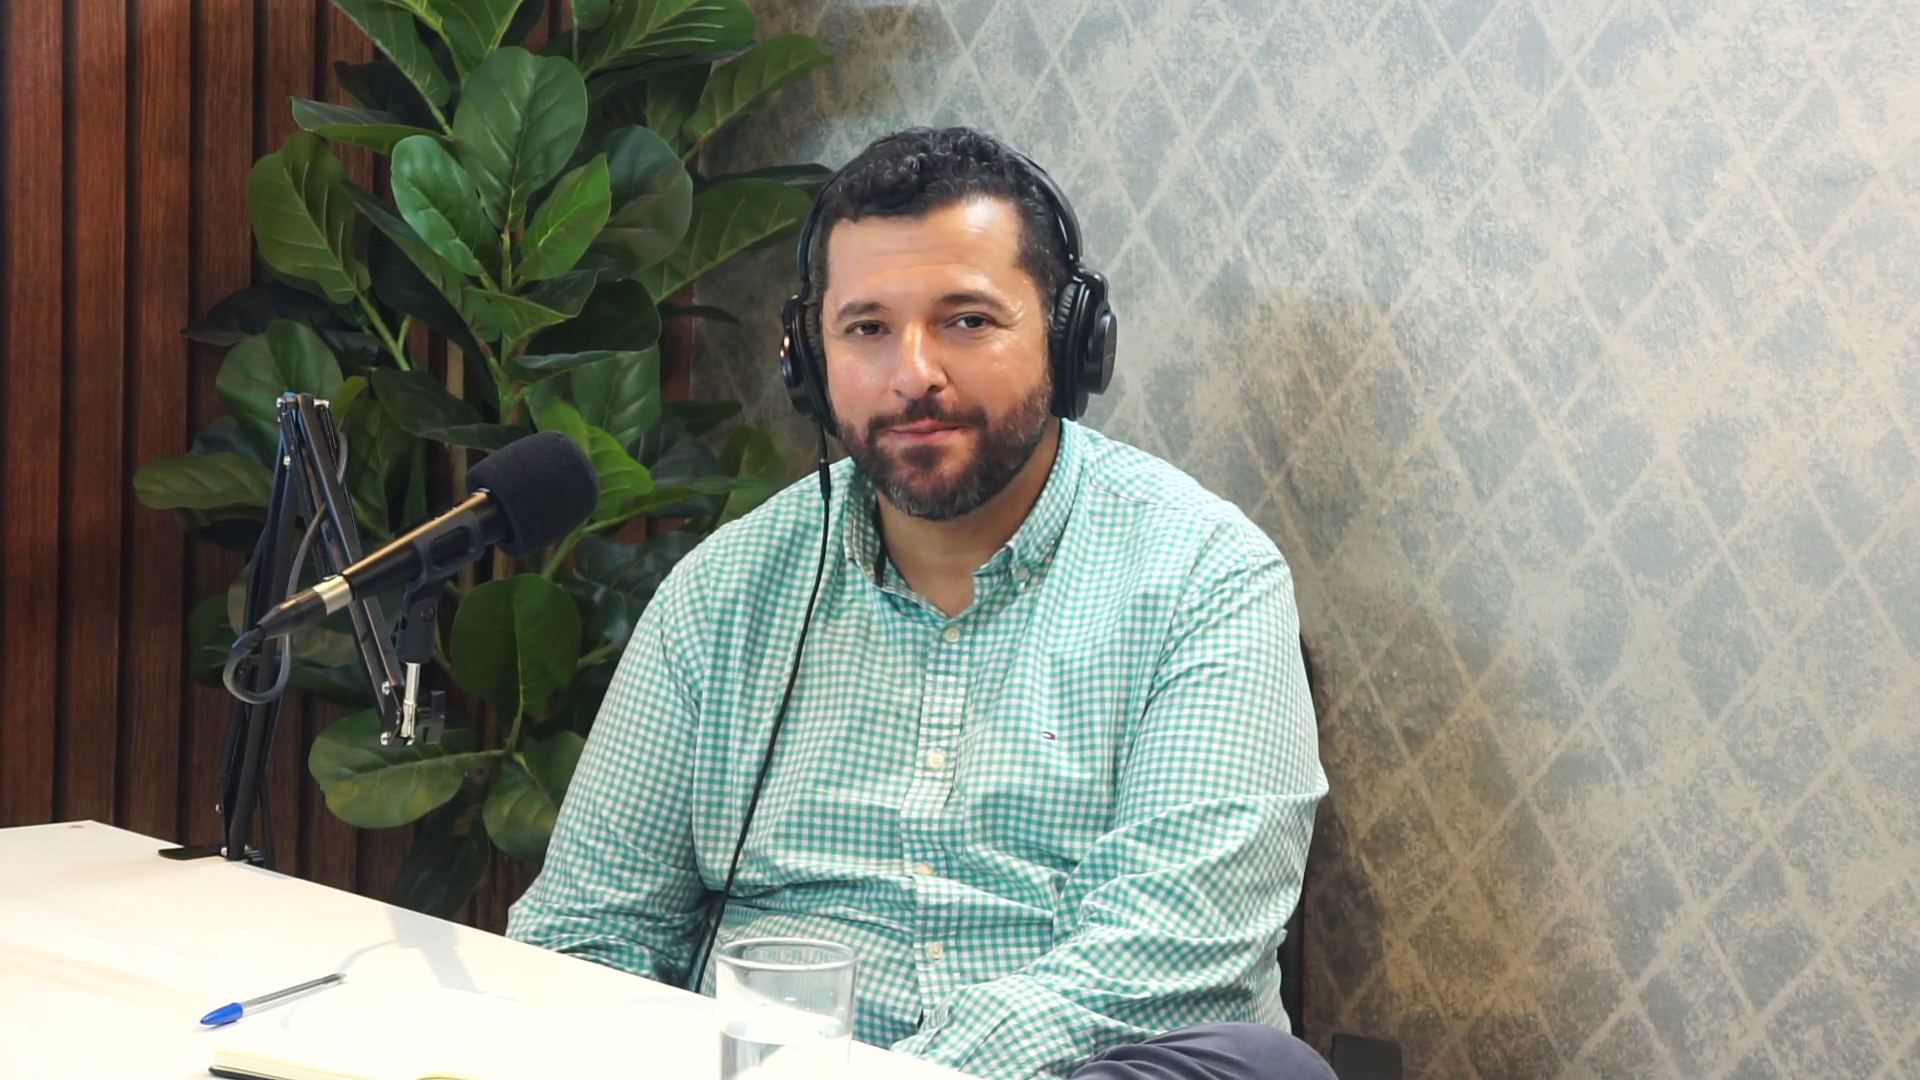 Euriale Voidela entrevista Tiago Pires da Silva no PodCast Comitê de Clientes A experiência do cliente no segmento do varejo b